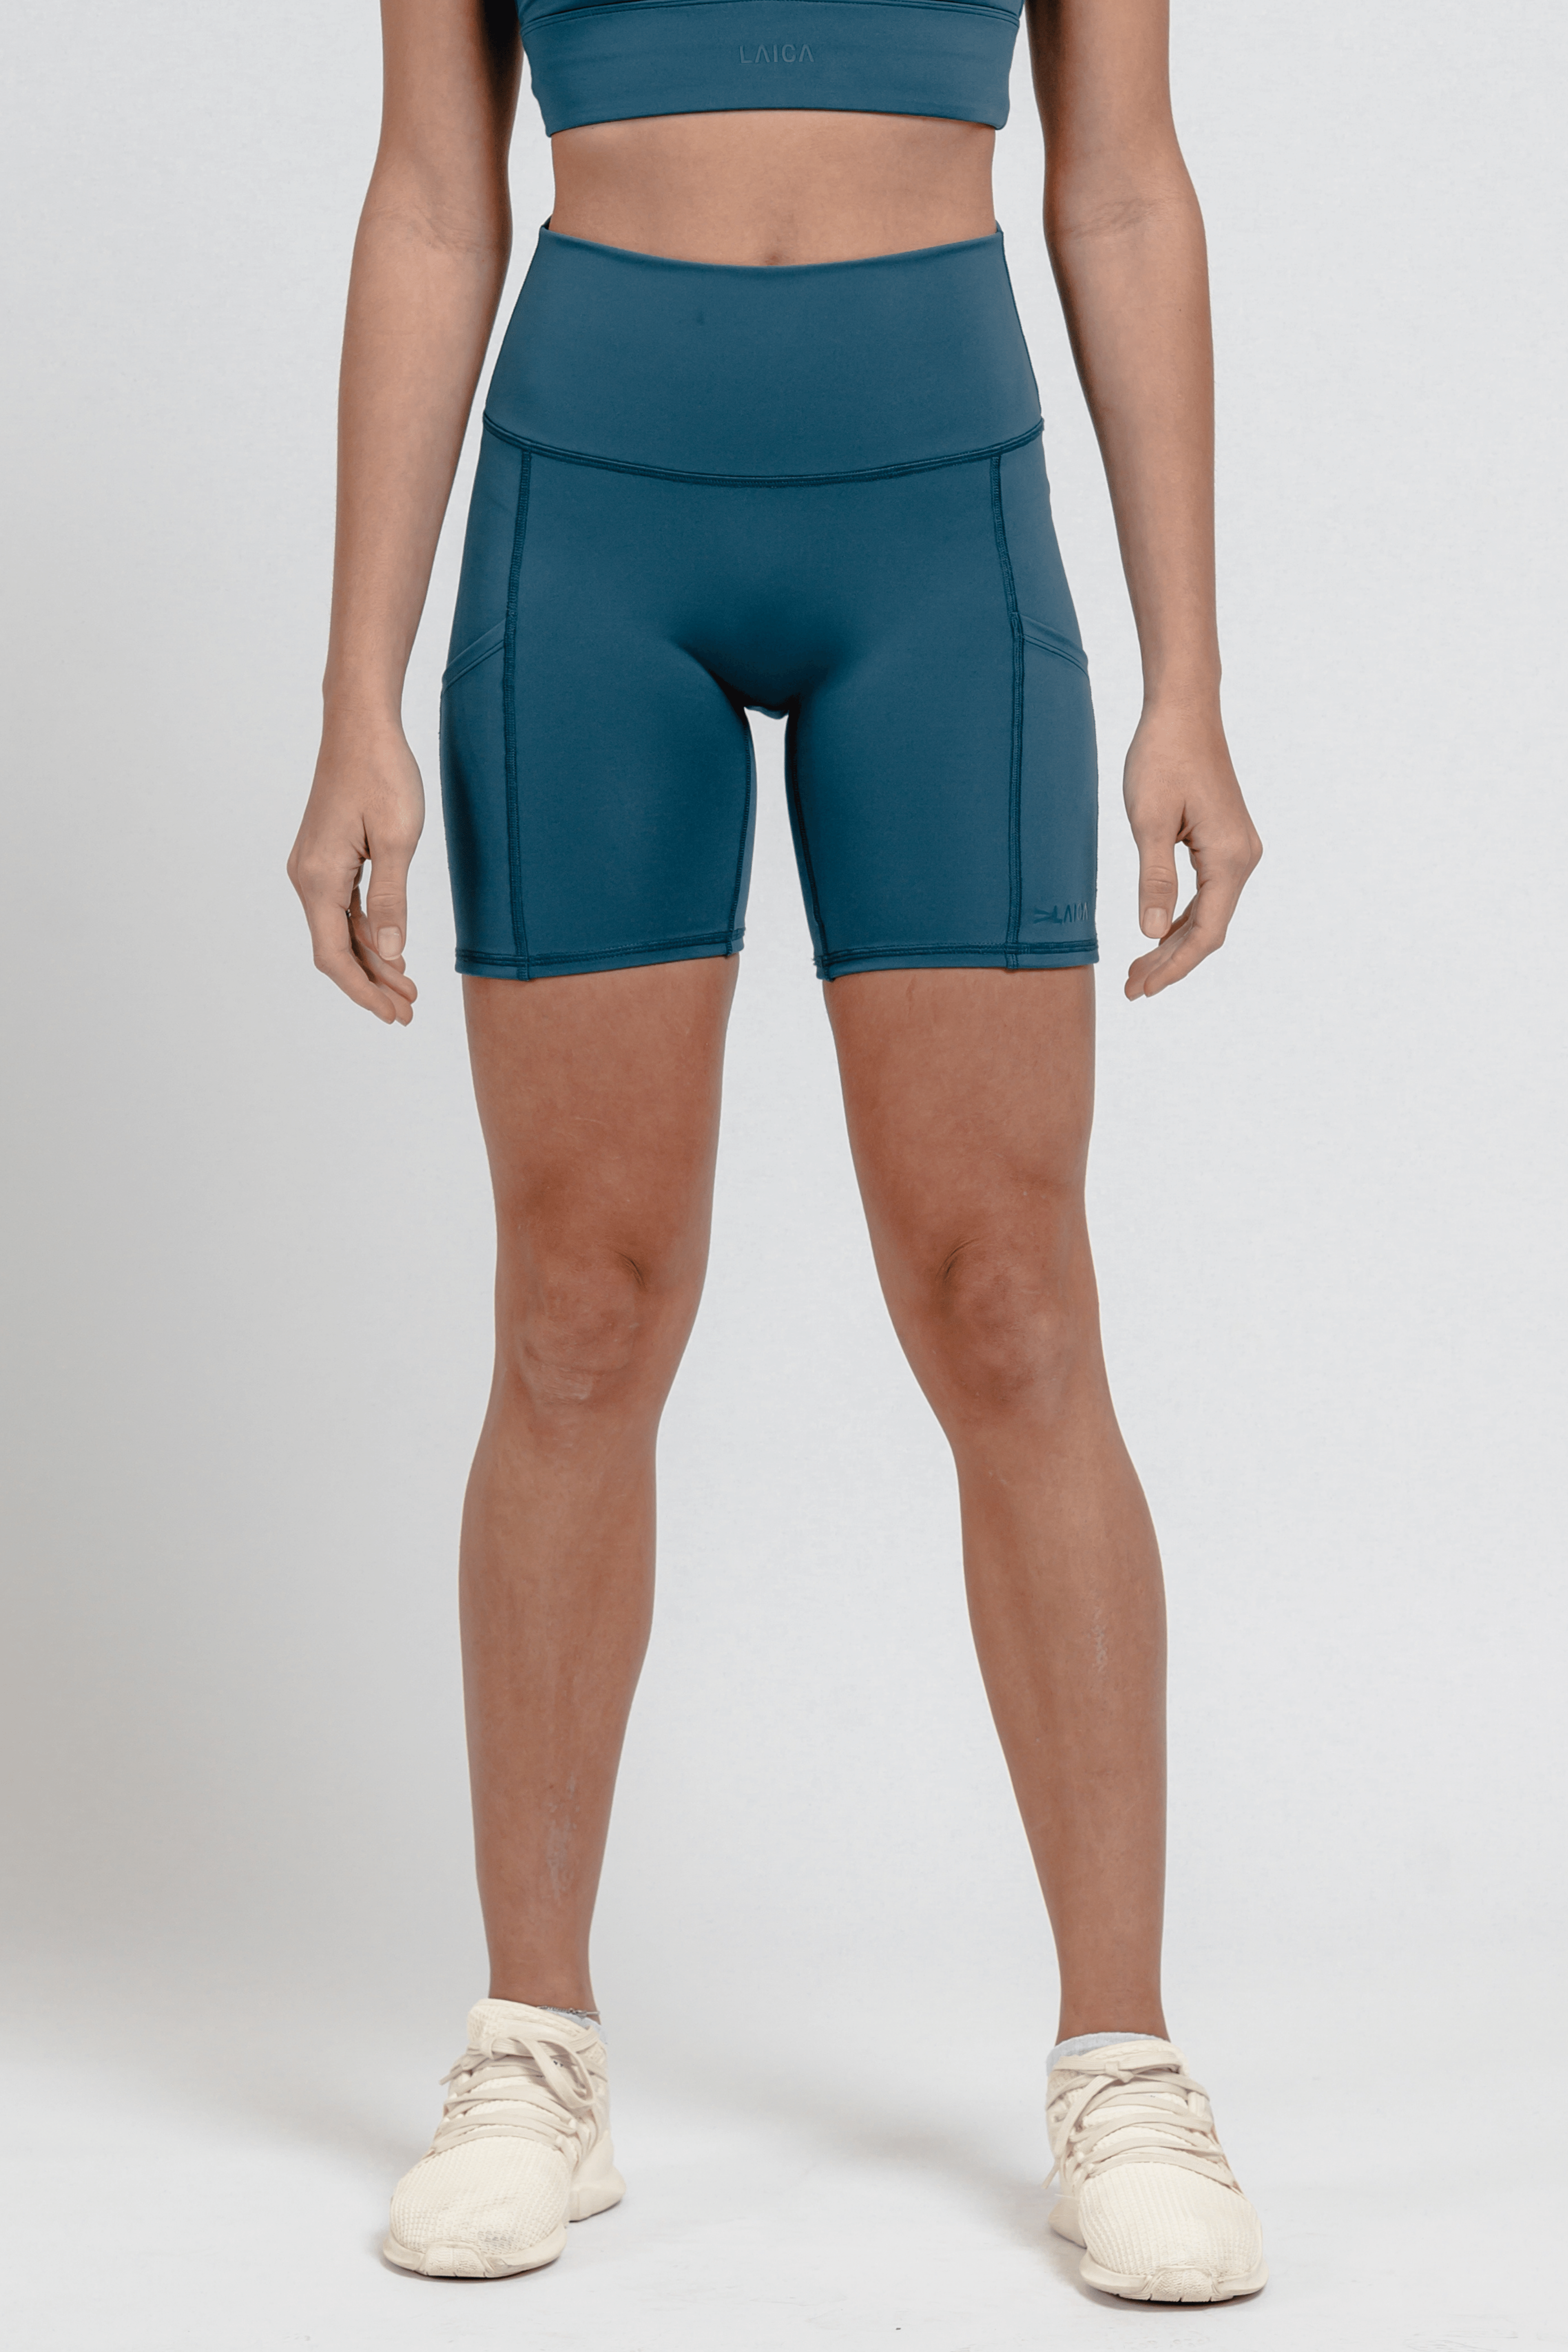 LAICA Pocket Biker Shorts - Cobalt